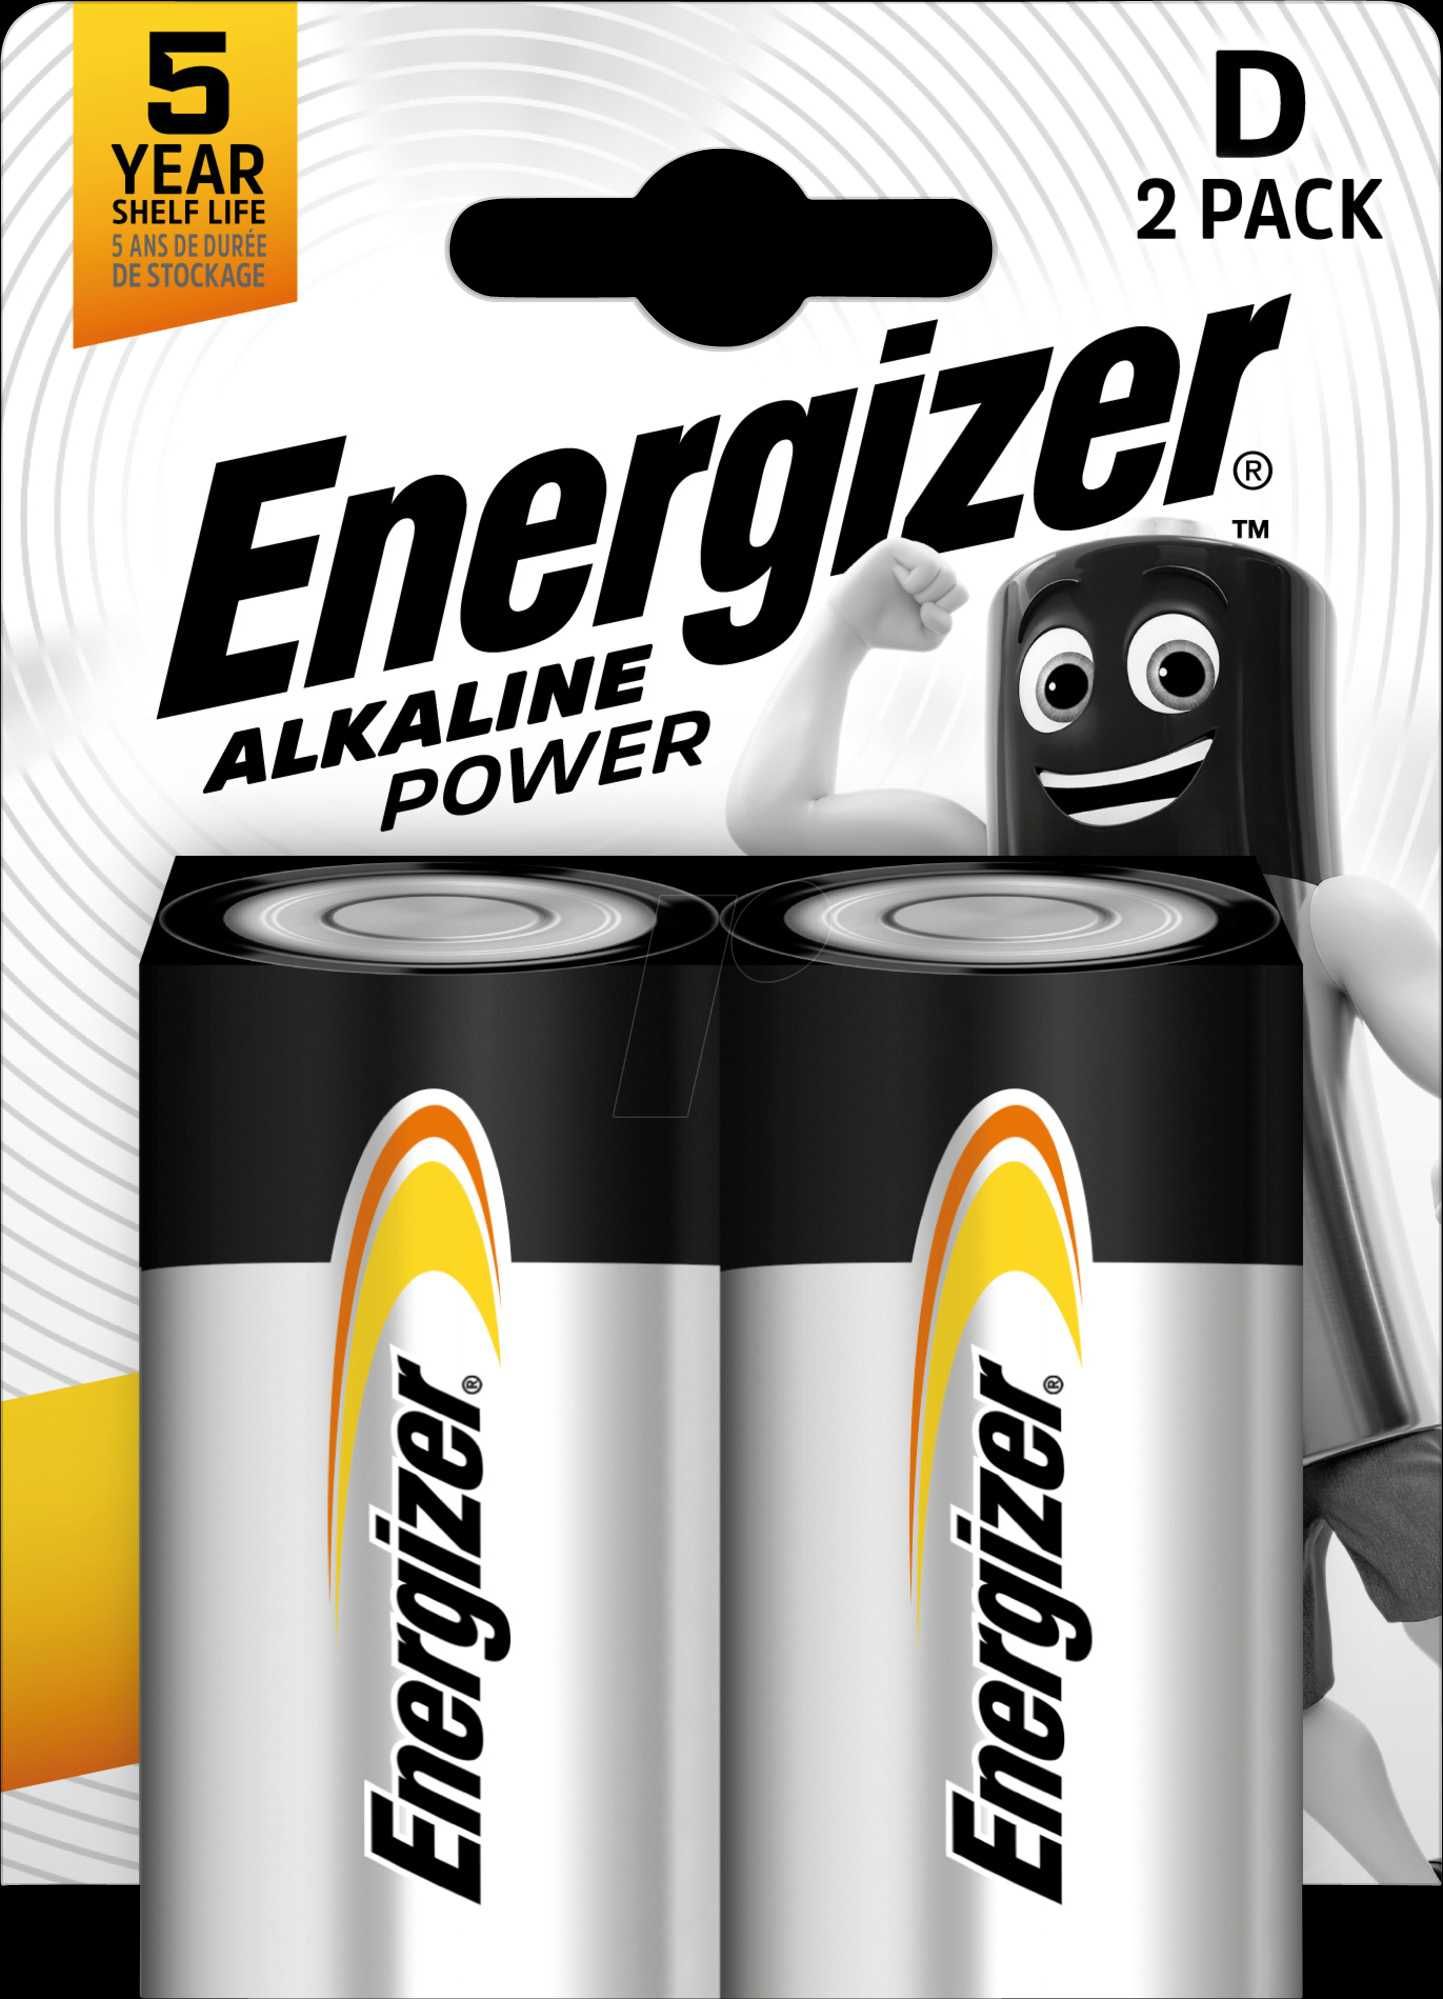 Батарейка Energizer Alkaline Power D/LR20, цена за 2 шт. Есть опт!